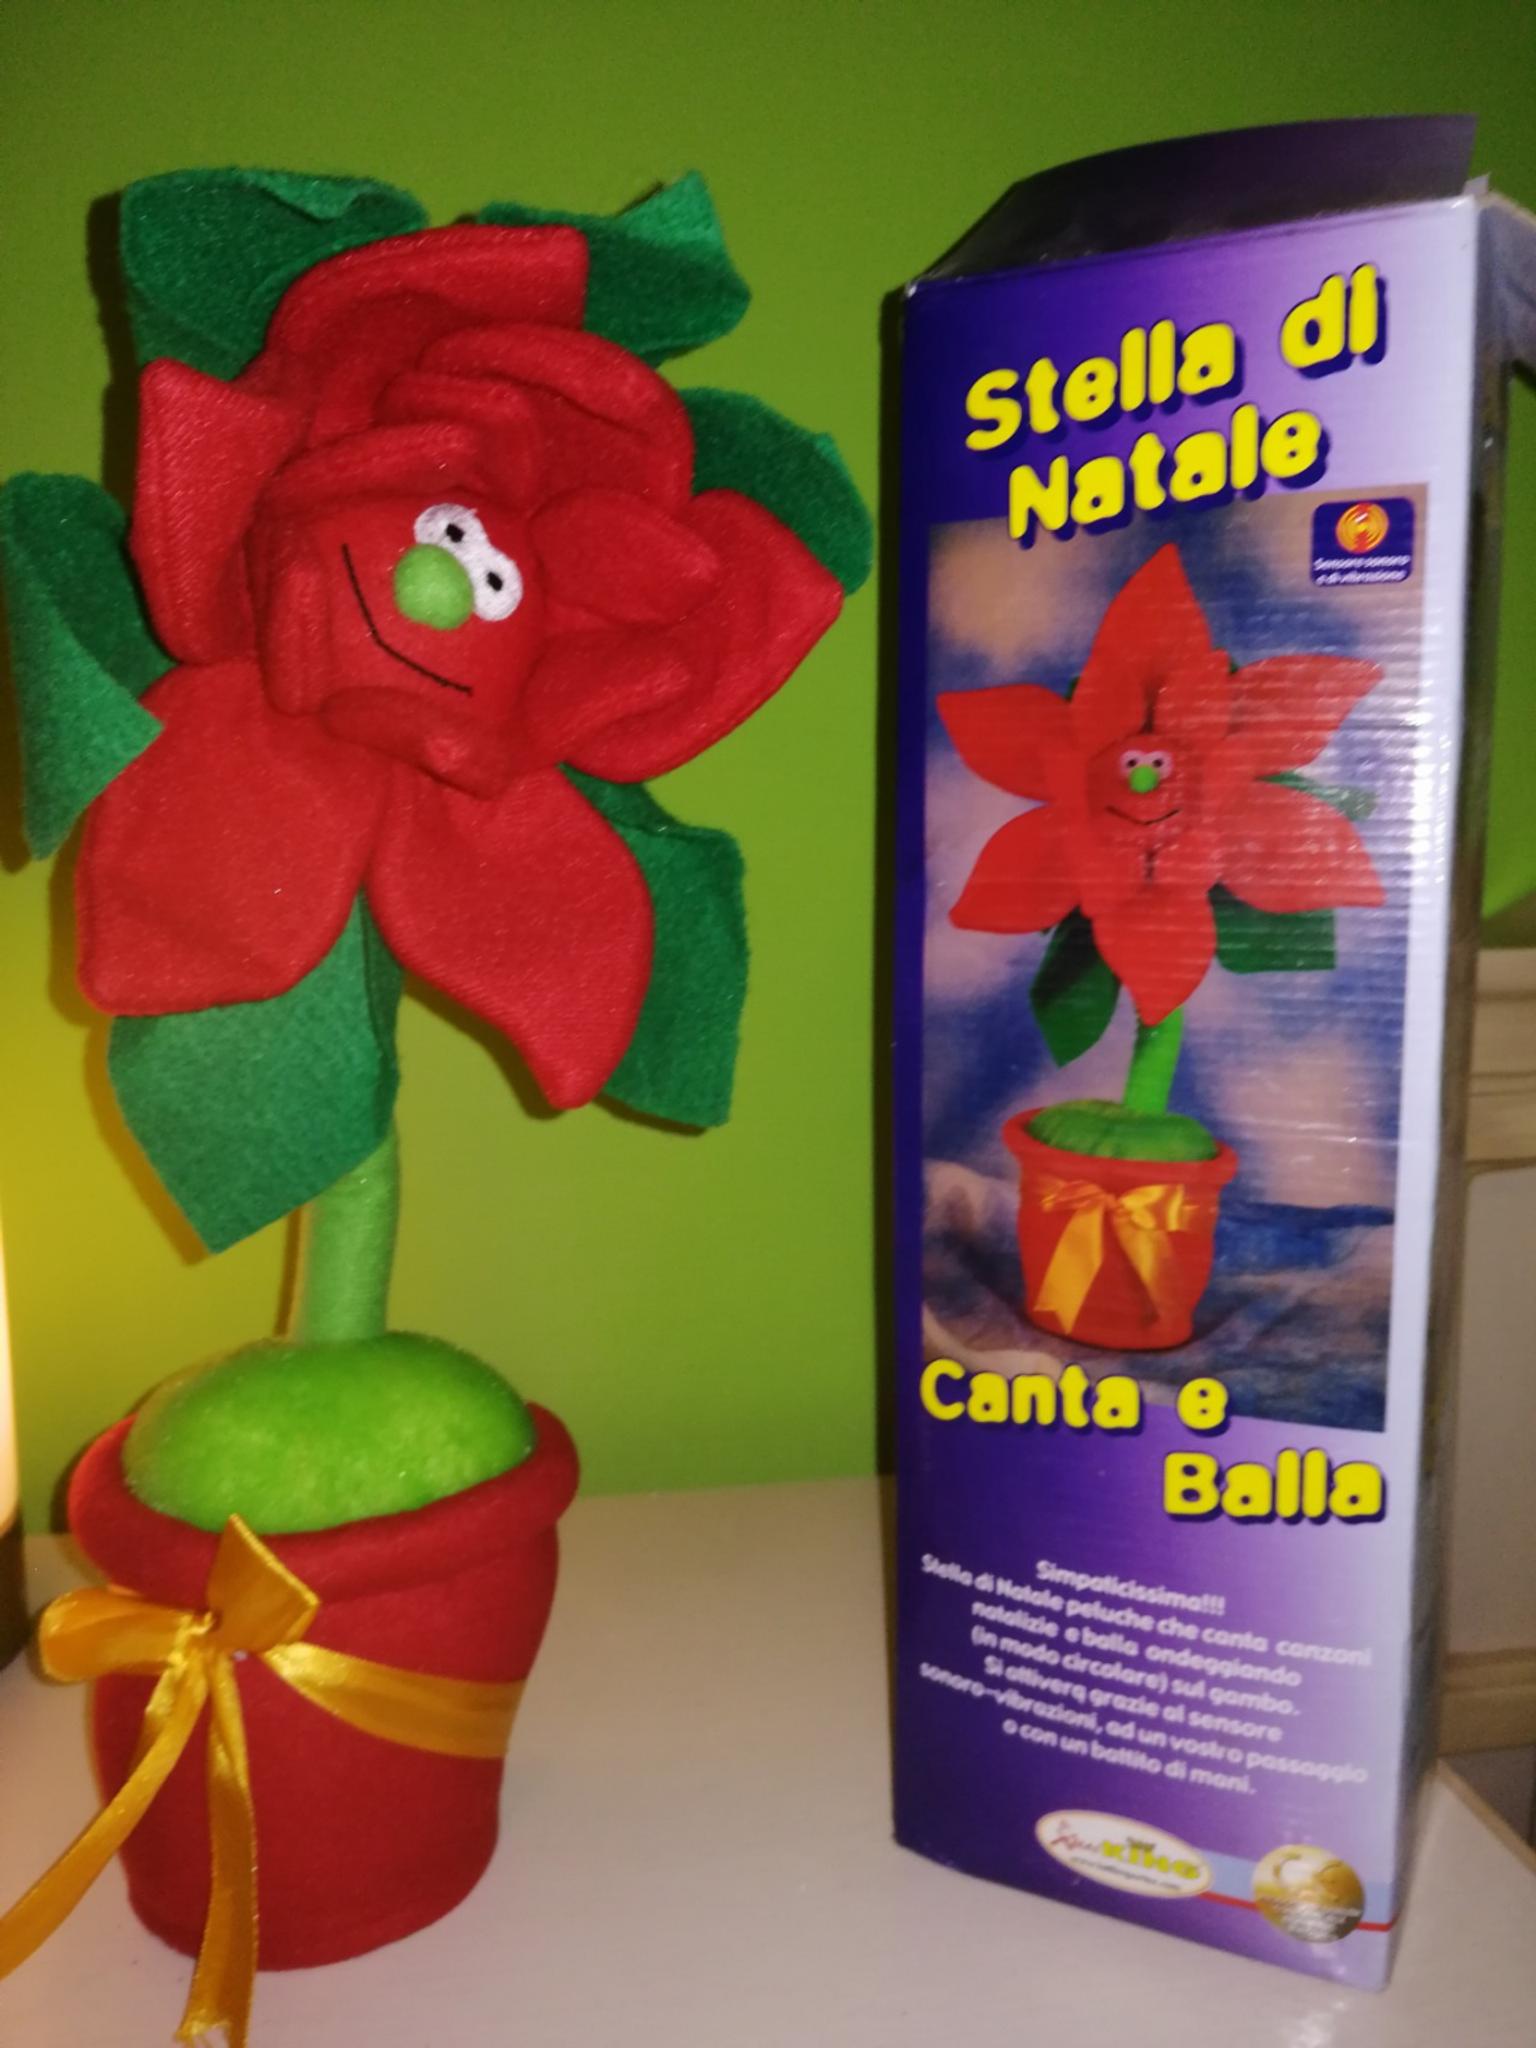 Canzone Stella Di Natale.Stella Di Natale Che Canta E Balla In 71100 Foggia For 2 00 For Sale Shpock